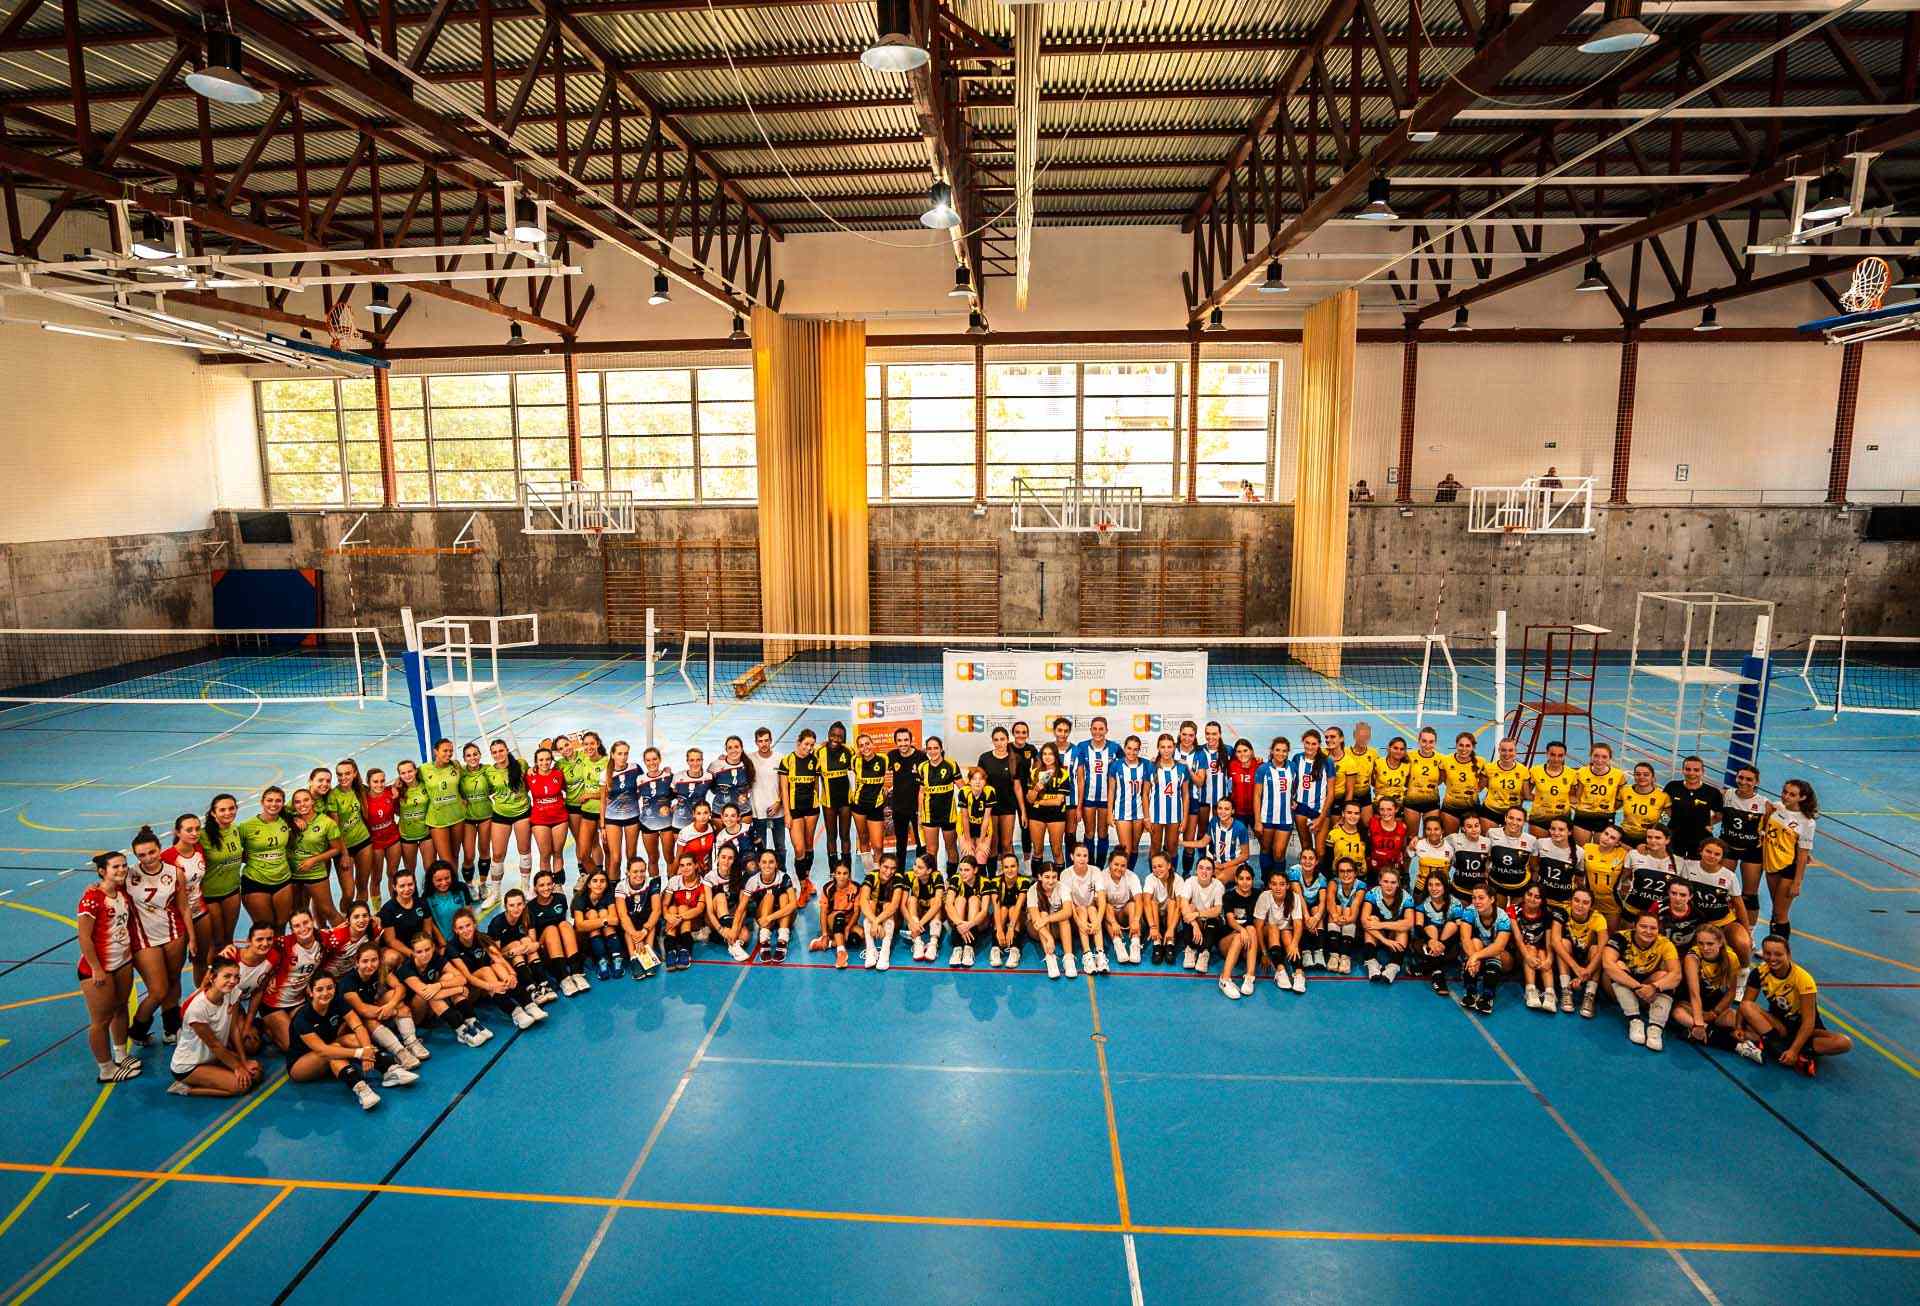 CIS University I Torneo de Voleibol Educación y Deporte organizado por CIS University